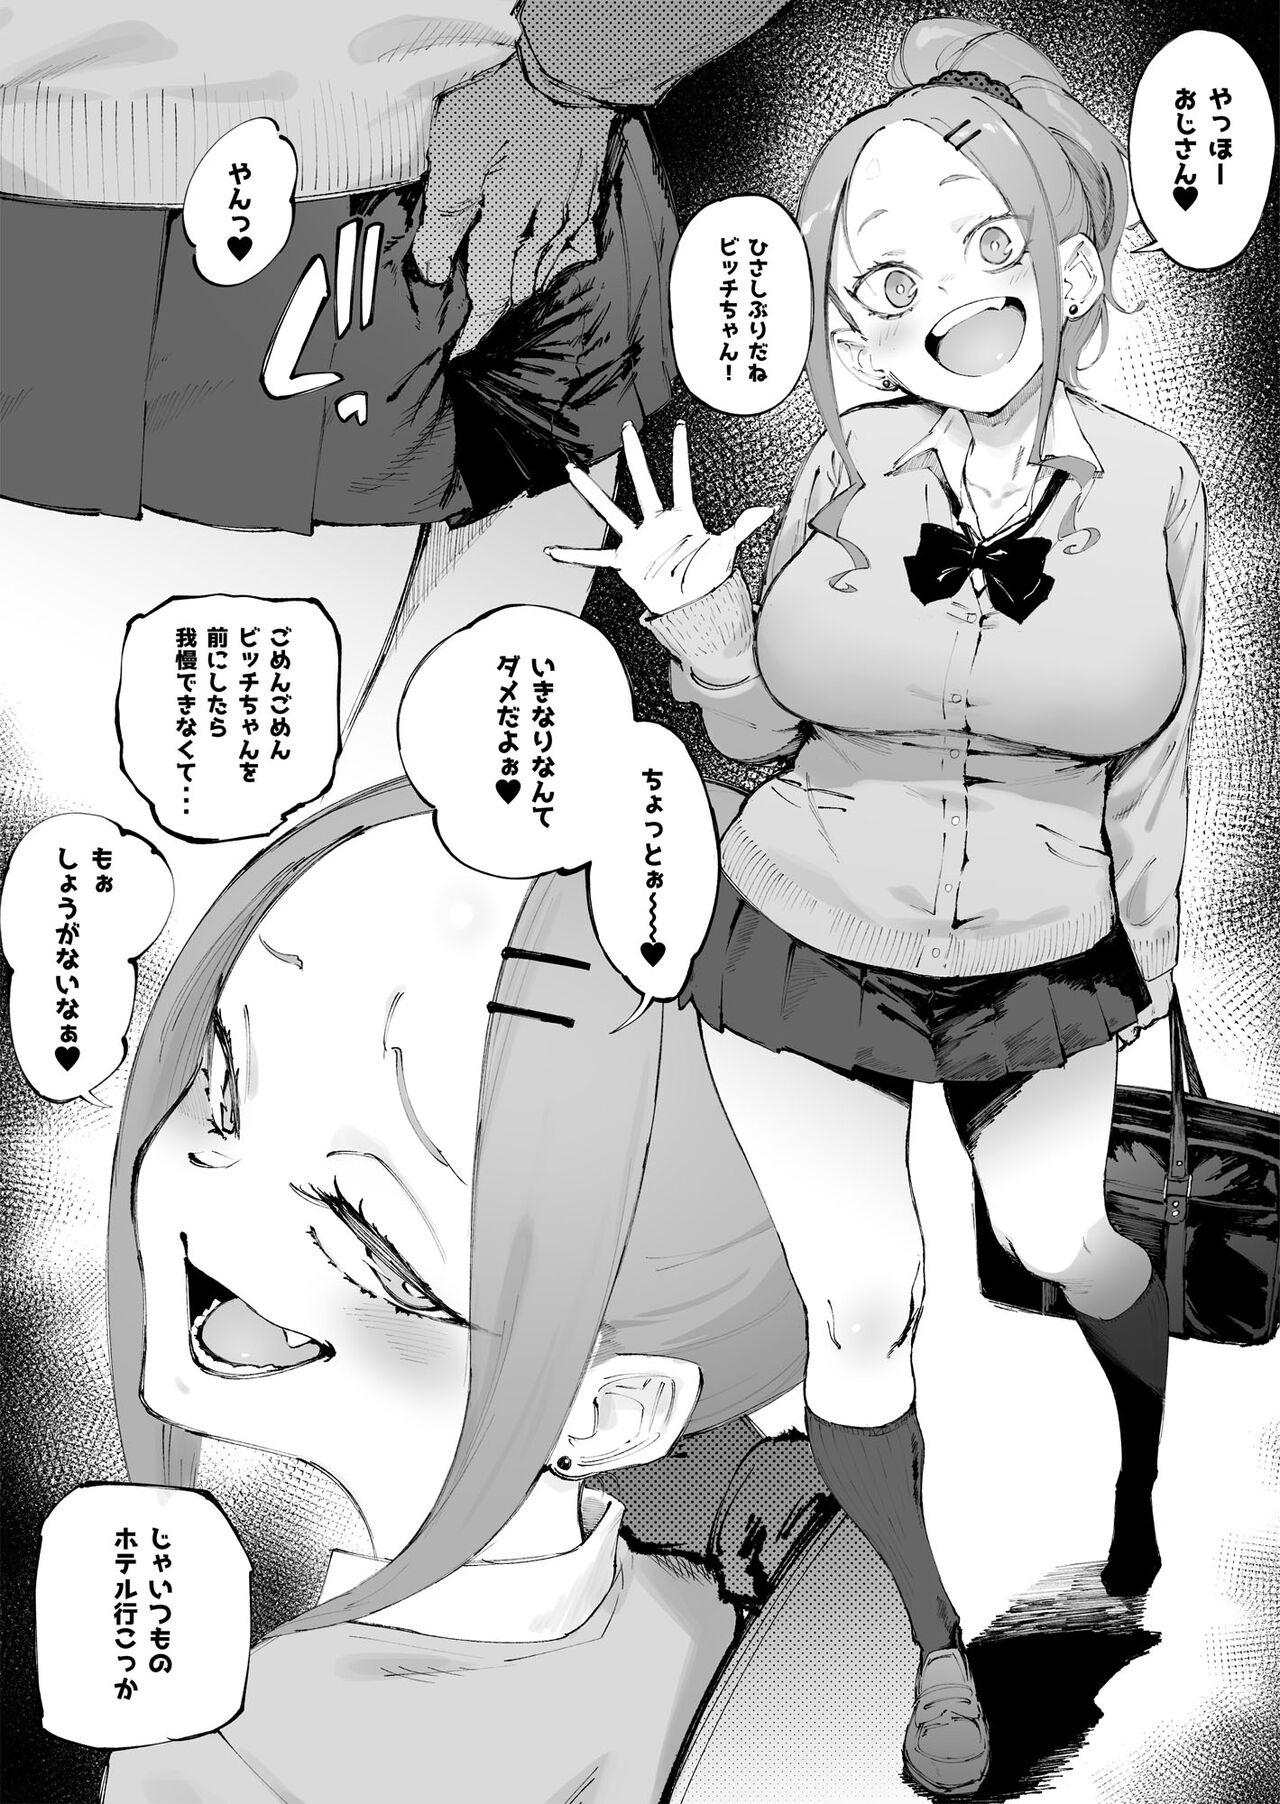 Rico Uchi no Ko Manga Sono 2 - Original Wam - Page 1